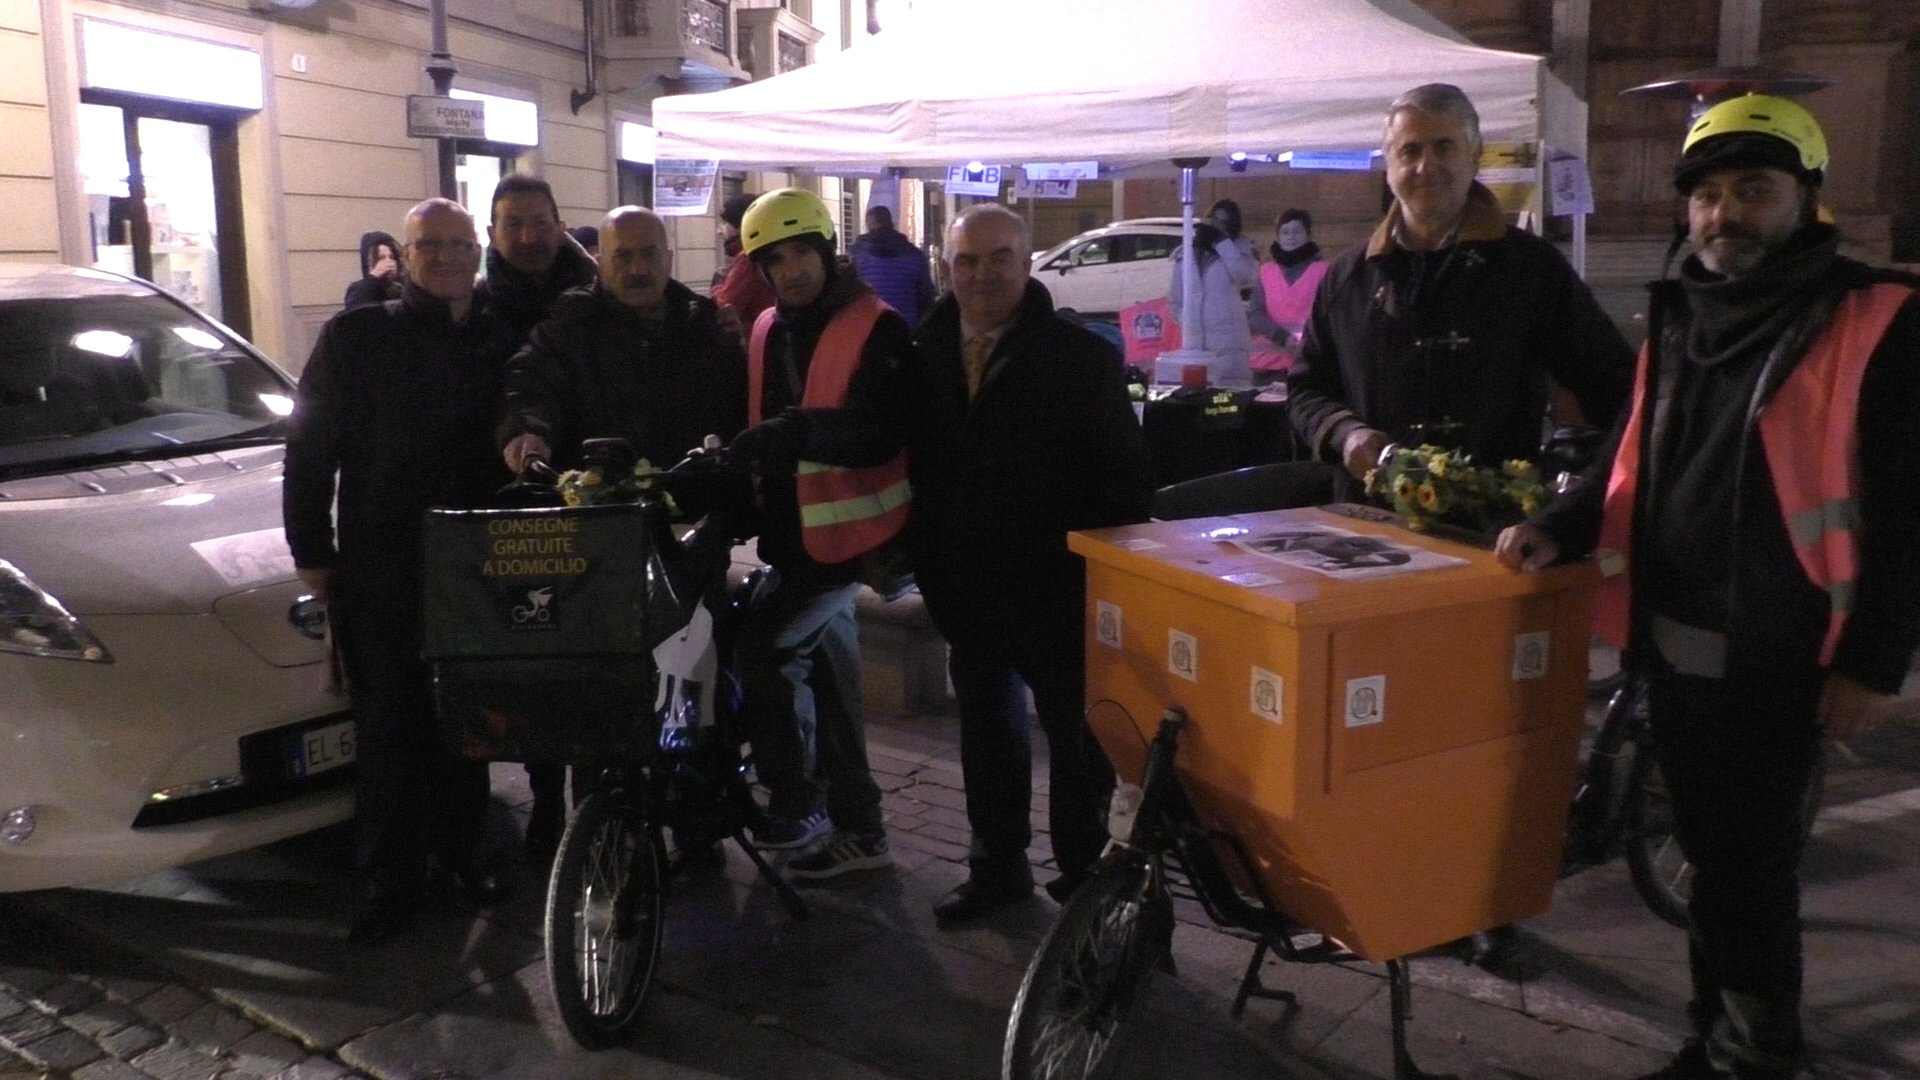 Borgo Rovereto: consegne gratis a casa grazie a volontari in bici